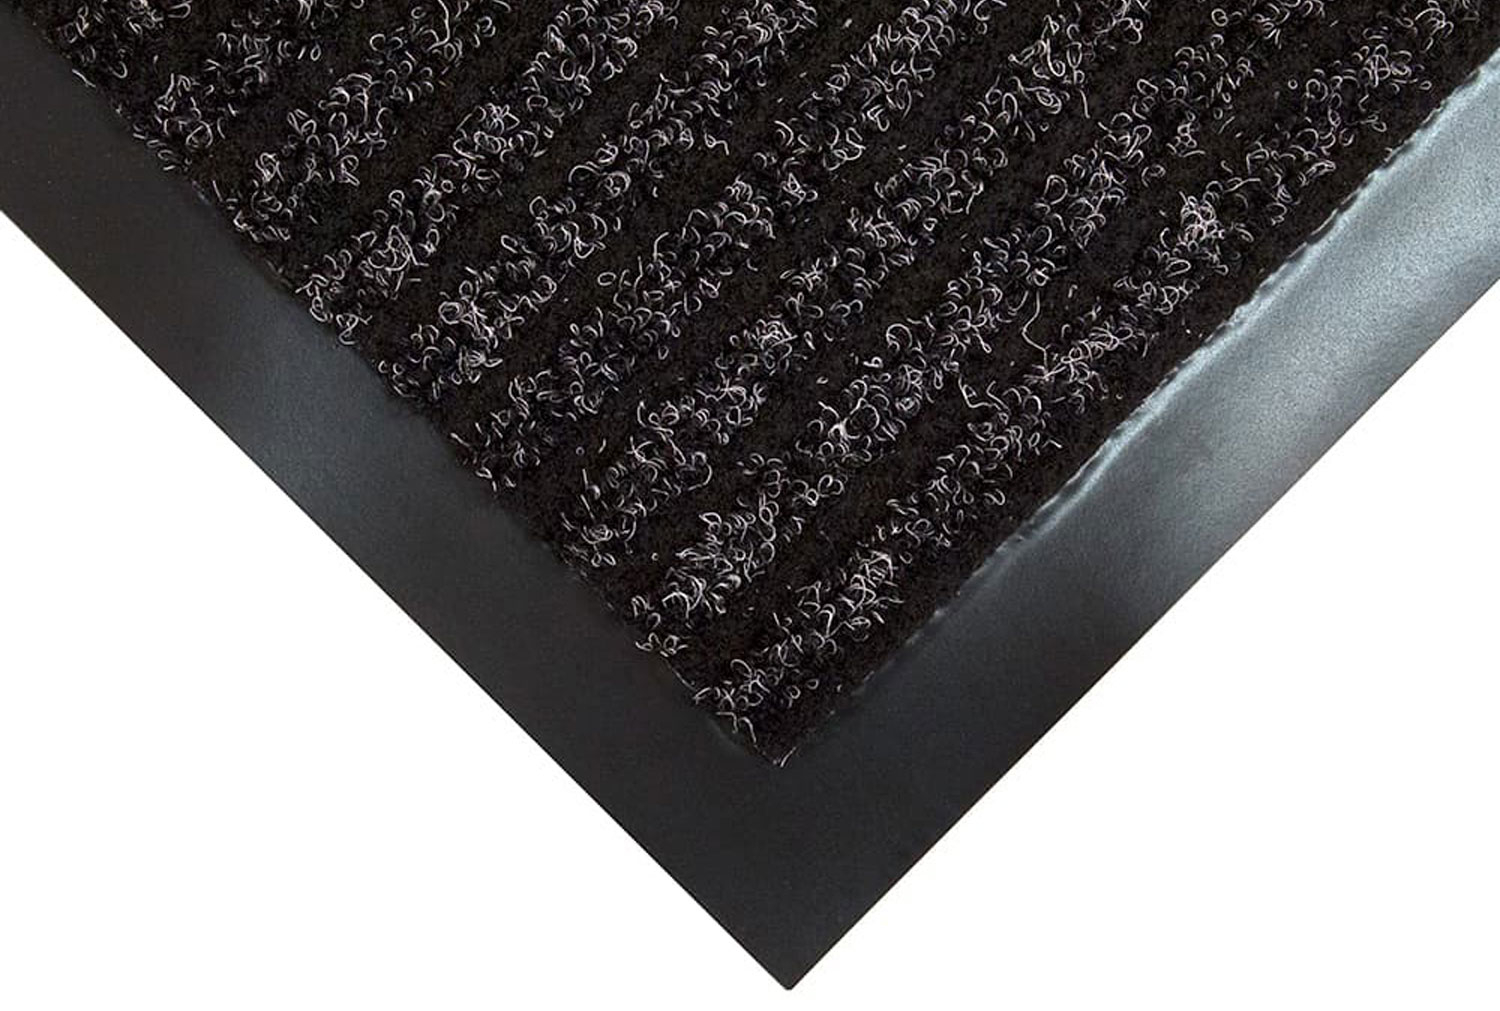 Toughrib Heavy Duty Doormat (Charcoal), 80wx120d (cm)